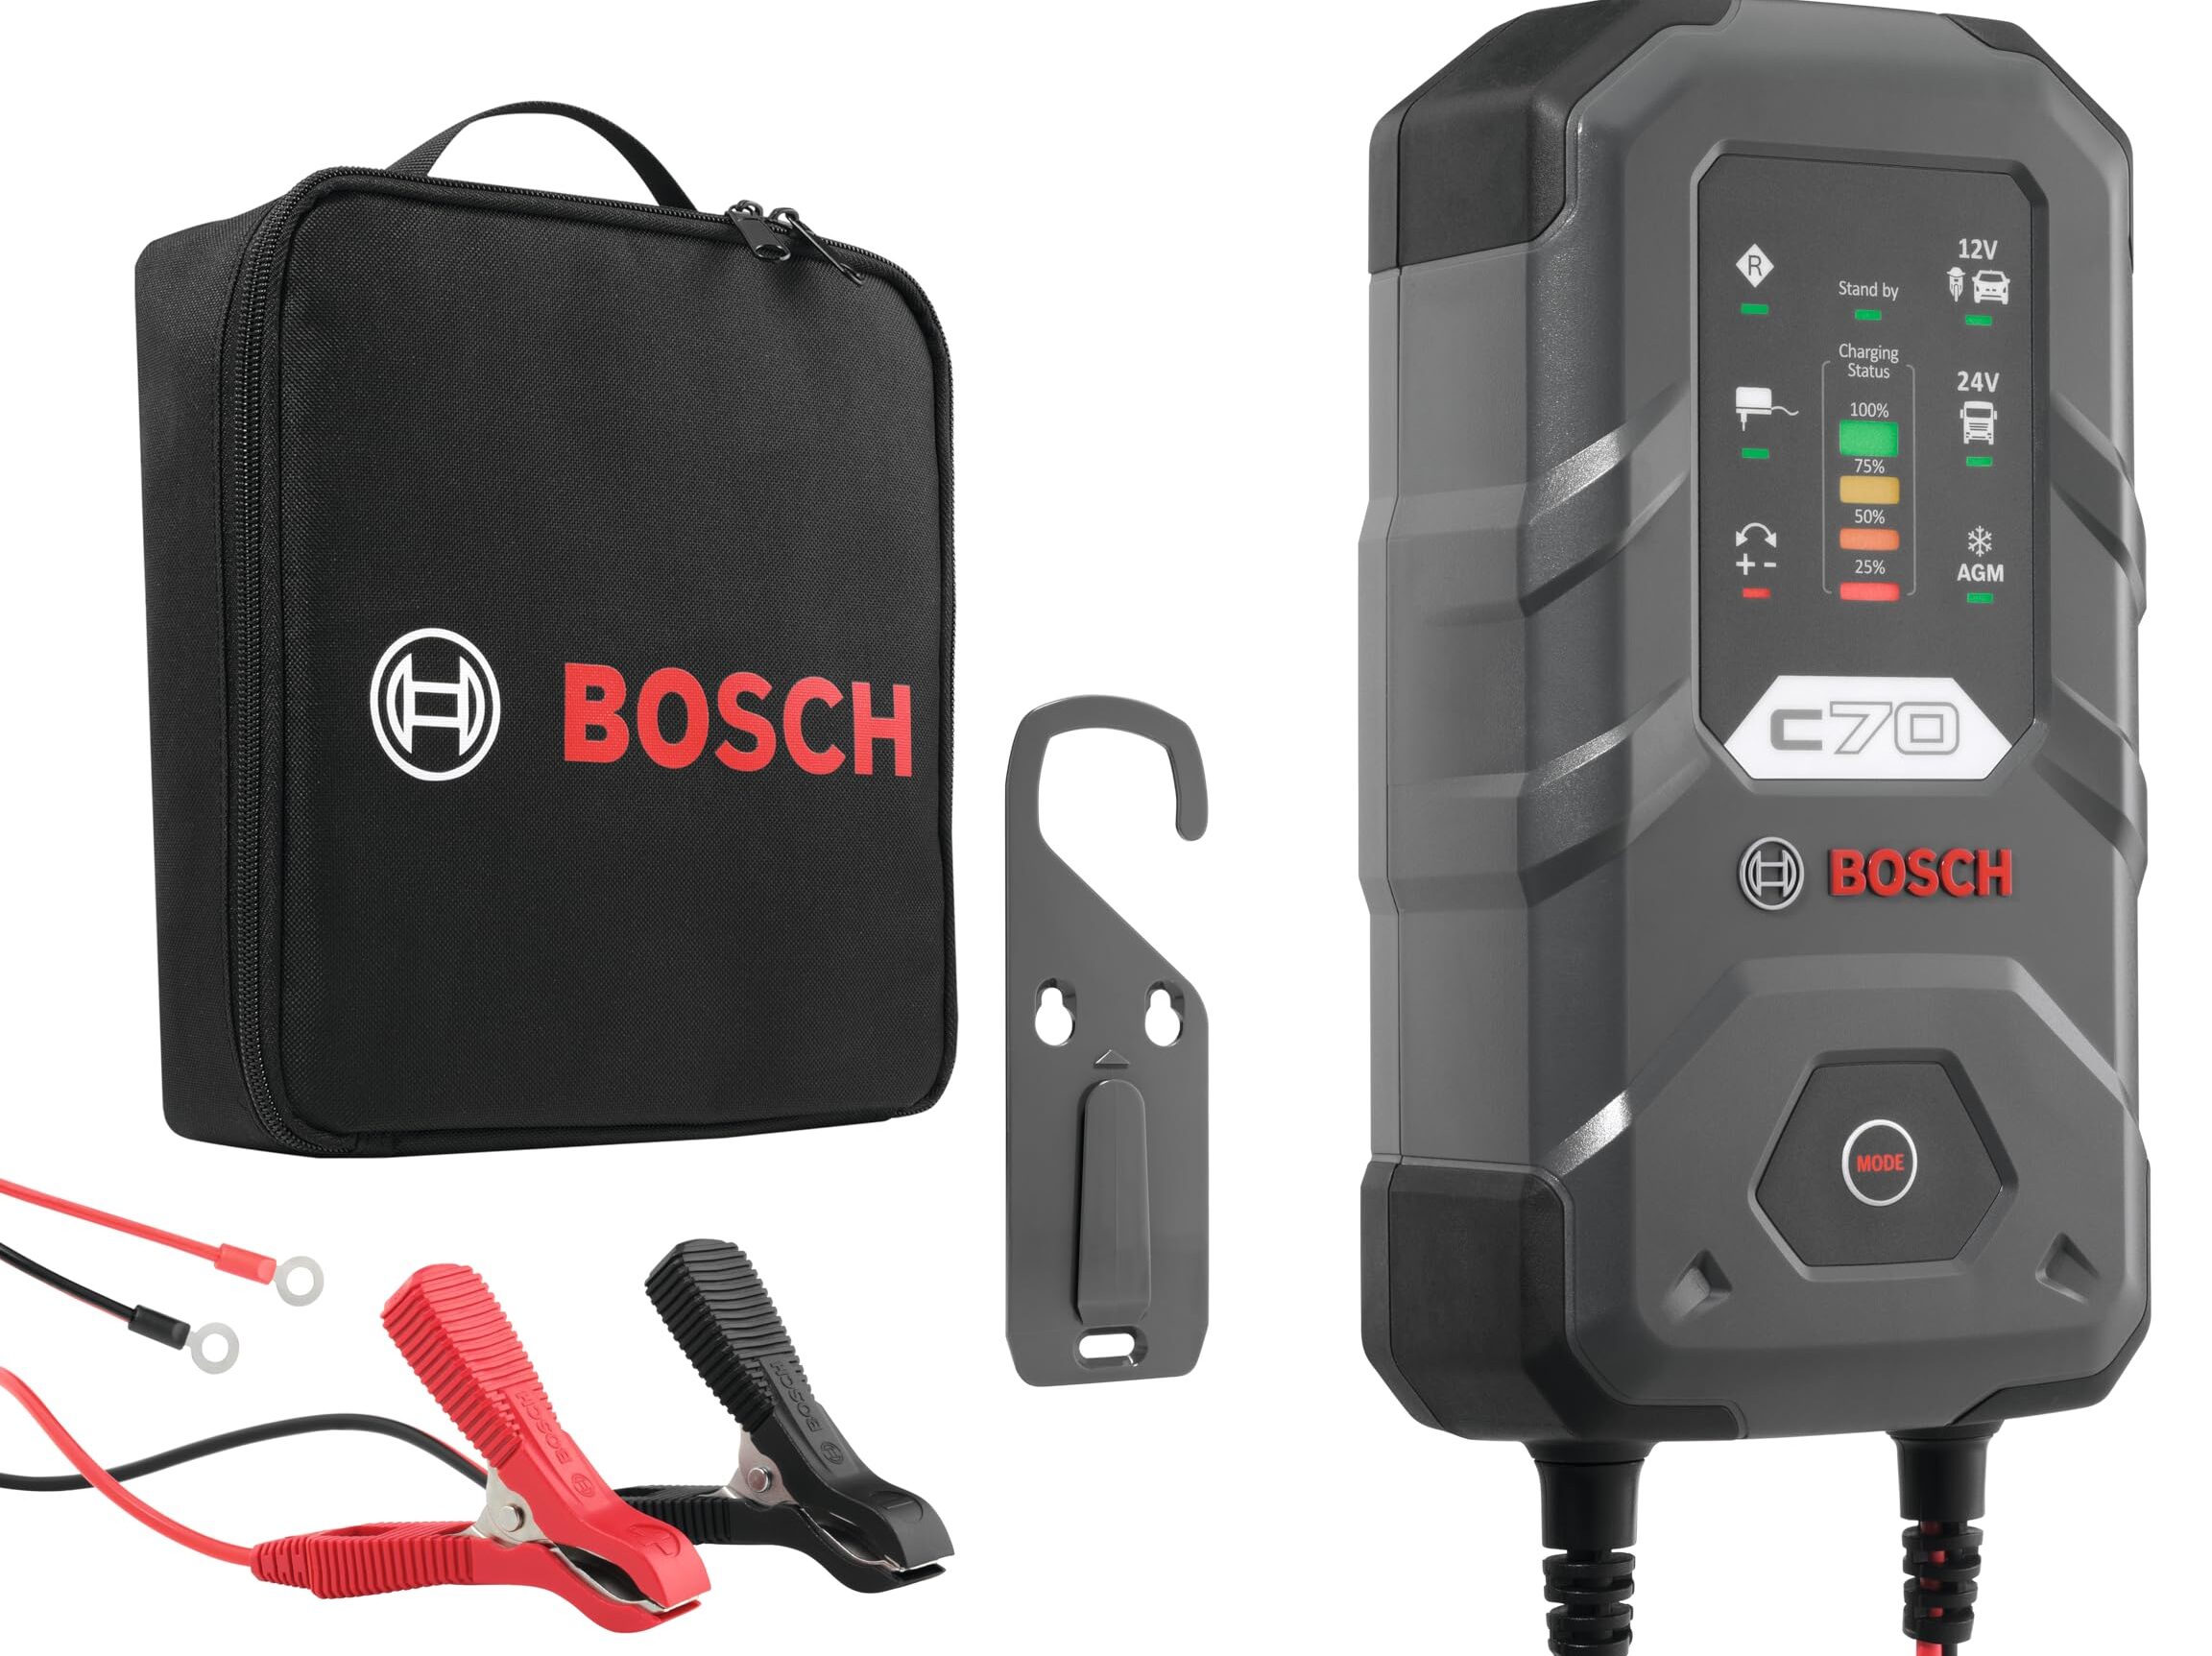 Comment choisir le bon chargeur de batterie Bosch pour votre véhicule ?